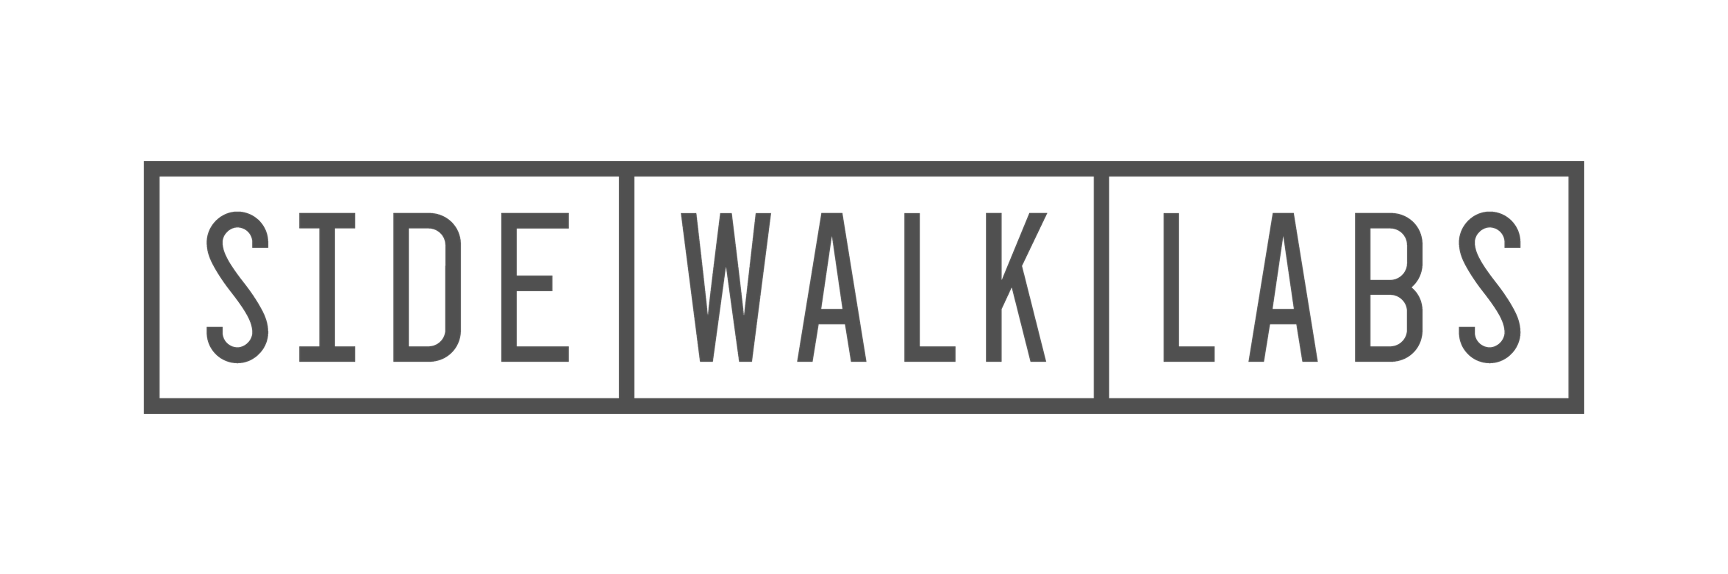 Website_Partner Logo_Side Walk Labs.png